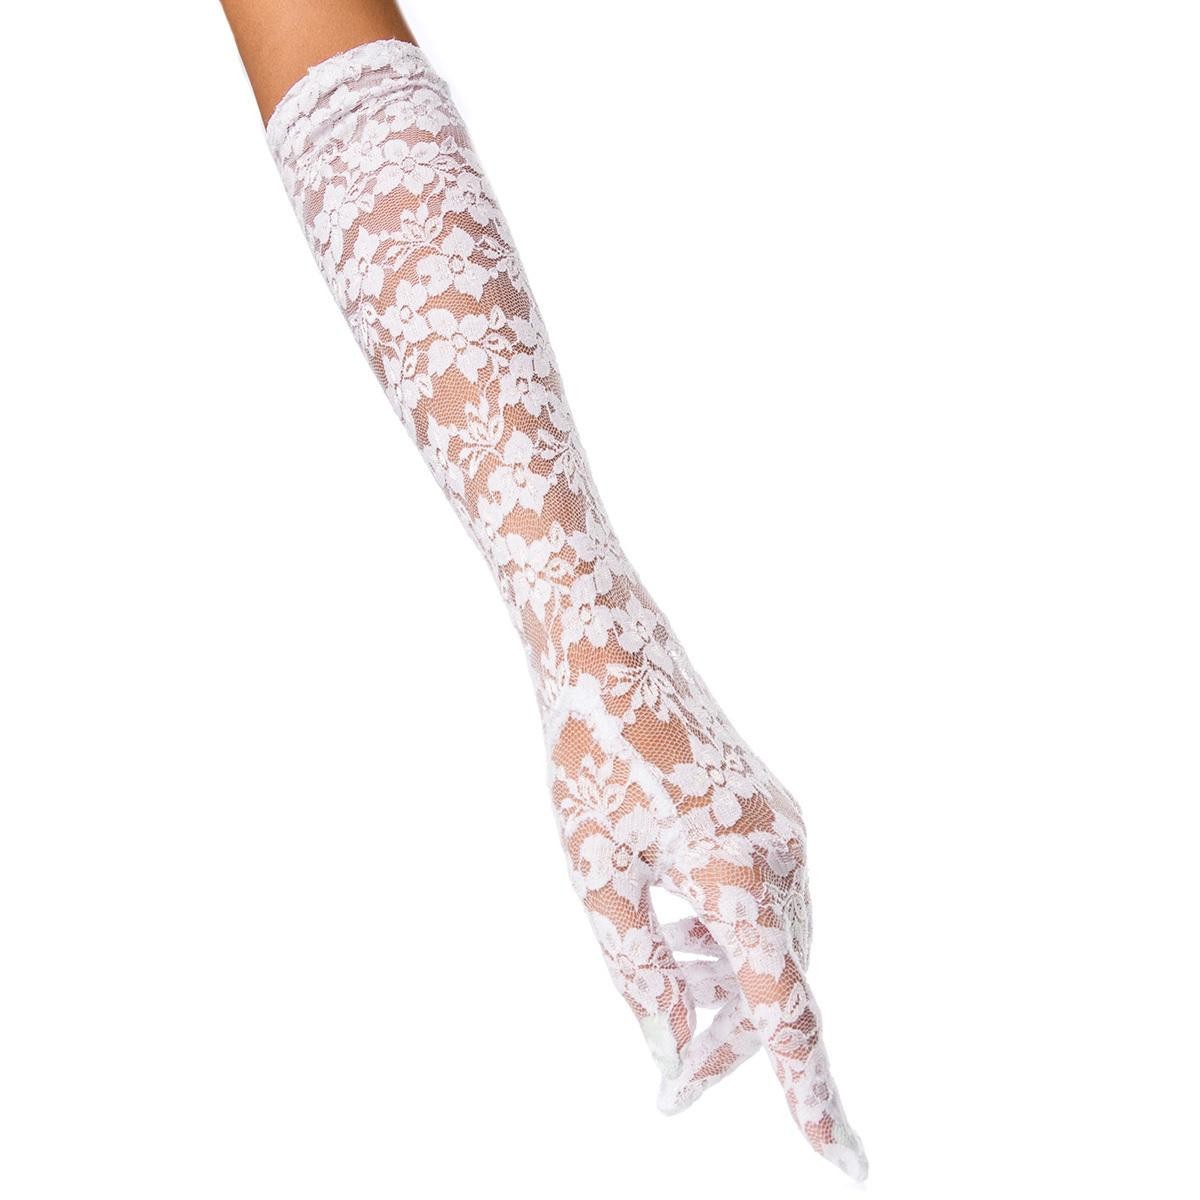  Beautys  Love  -  Spitzen-Handschuhe  lang  -  weiß 